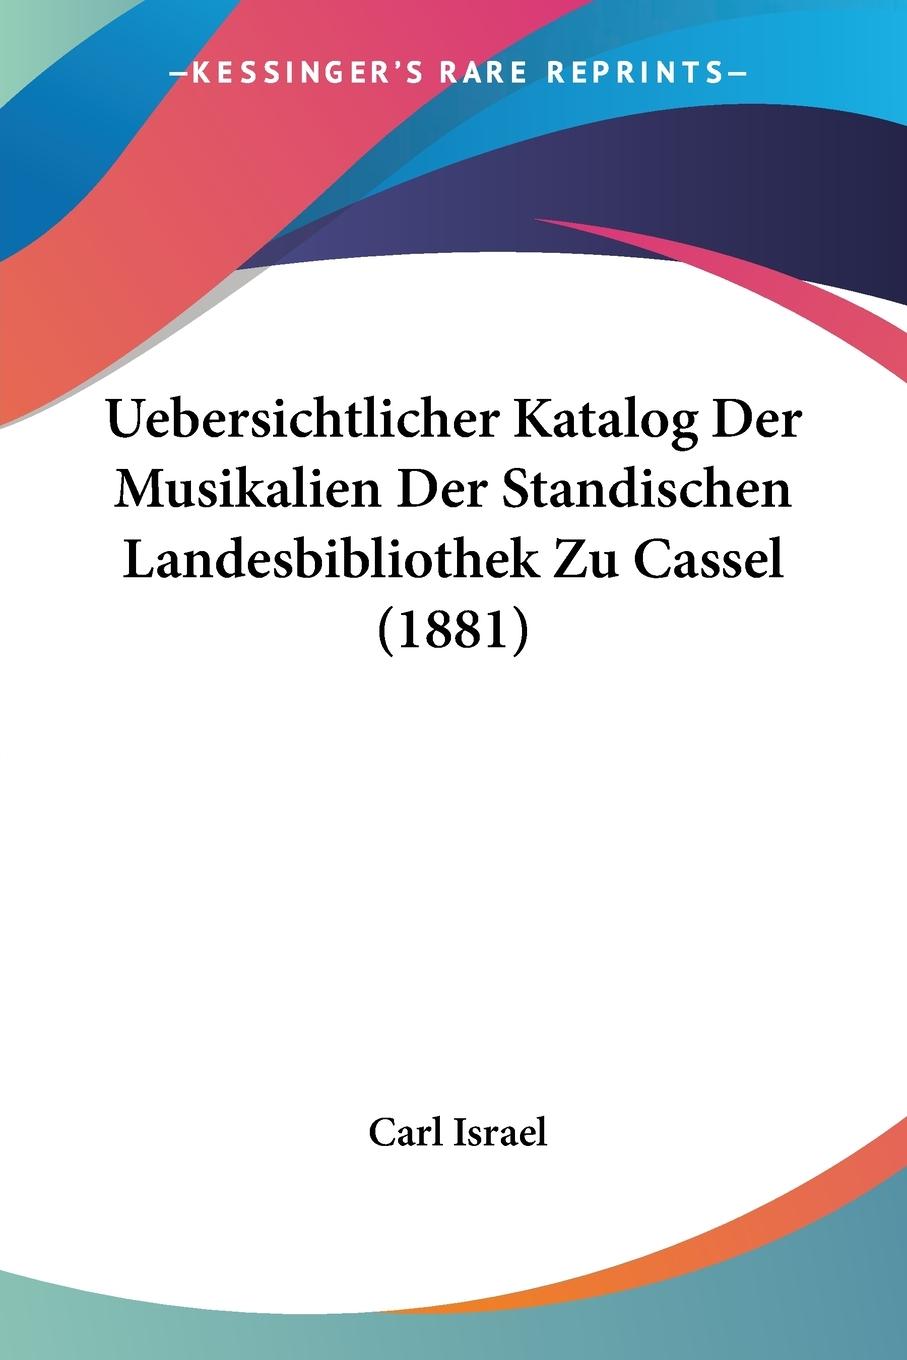 Uebersichtlicher Katalog Der Musikalien Der Standischen Landesbibliothek Zu Cassel (1881)